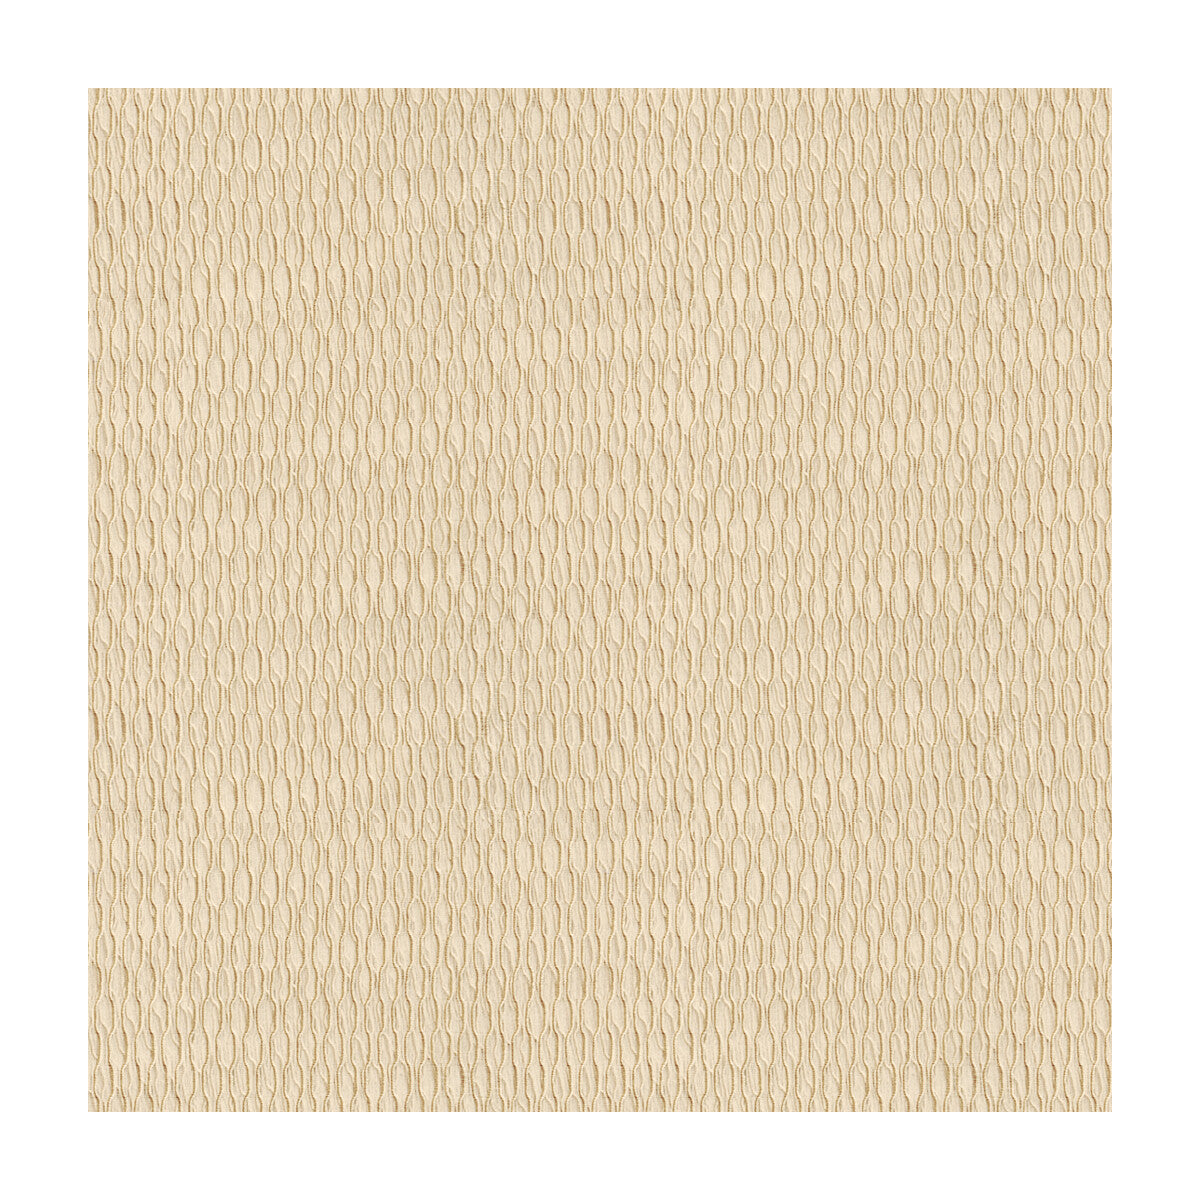 Kravet Basics fabric in 4105-16 color - pattern 4105.16.0 - by Kravet Basics